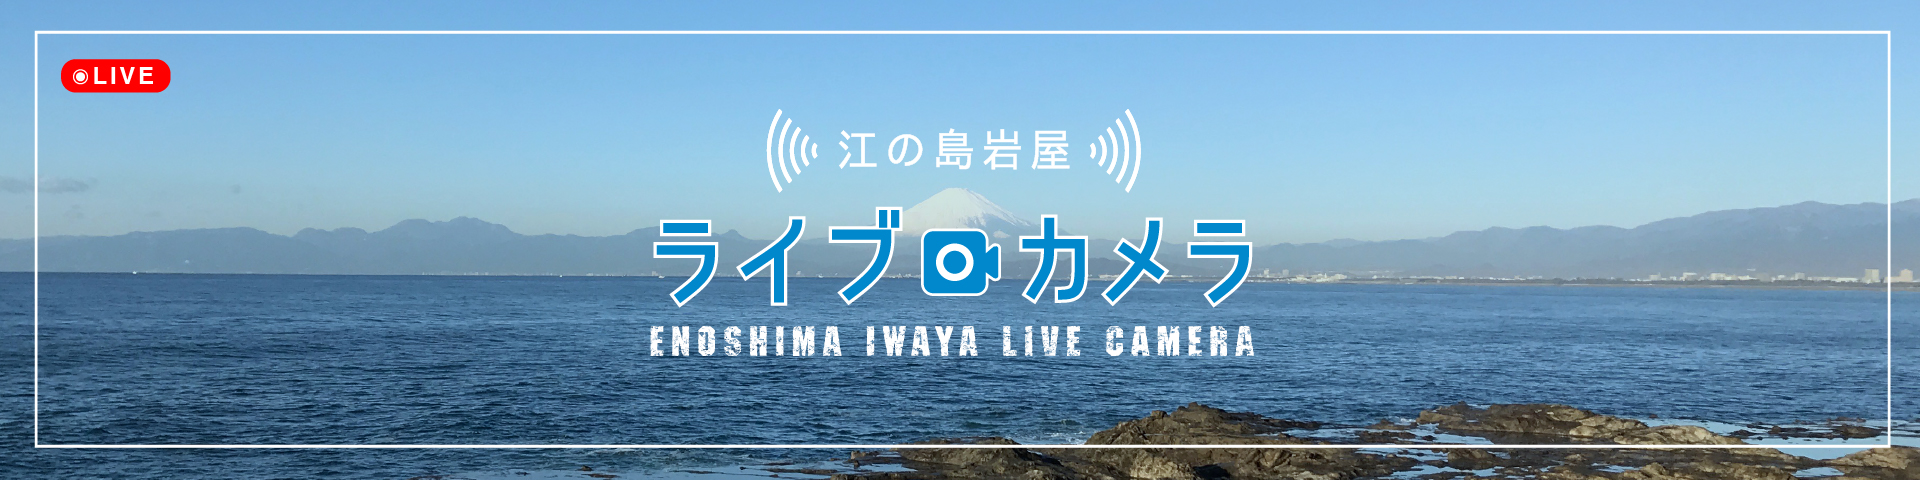 江の島岩屋ライブカメラ